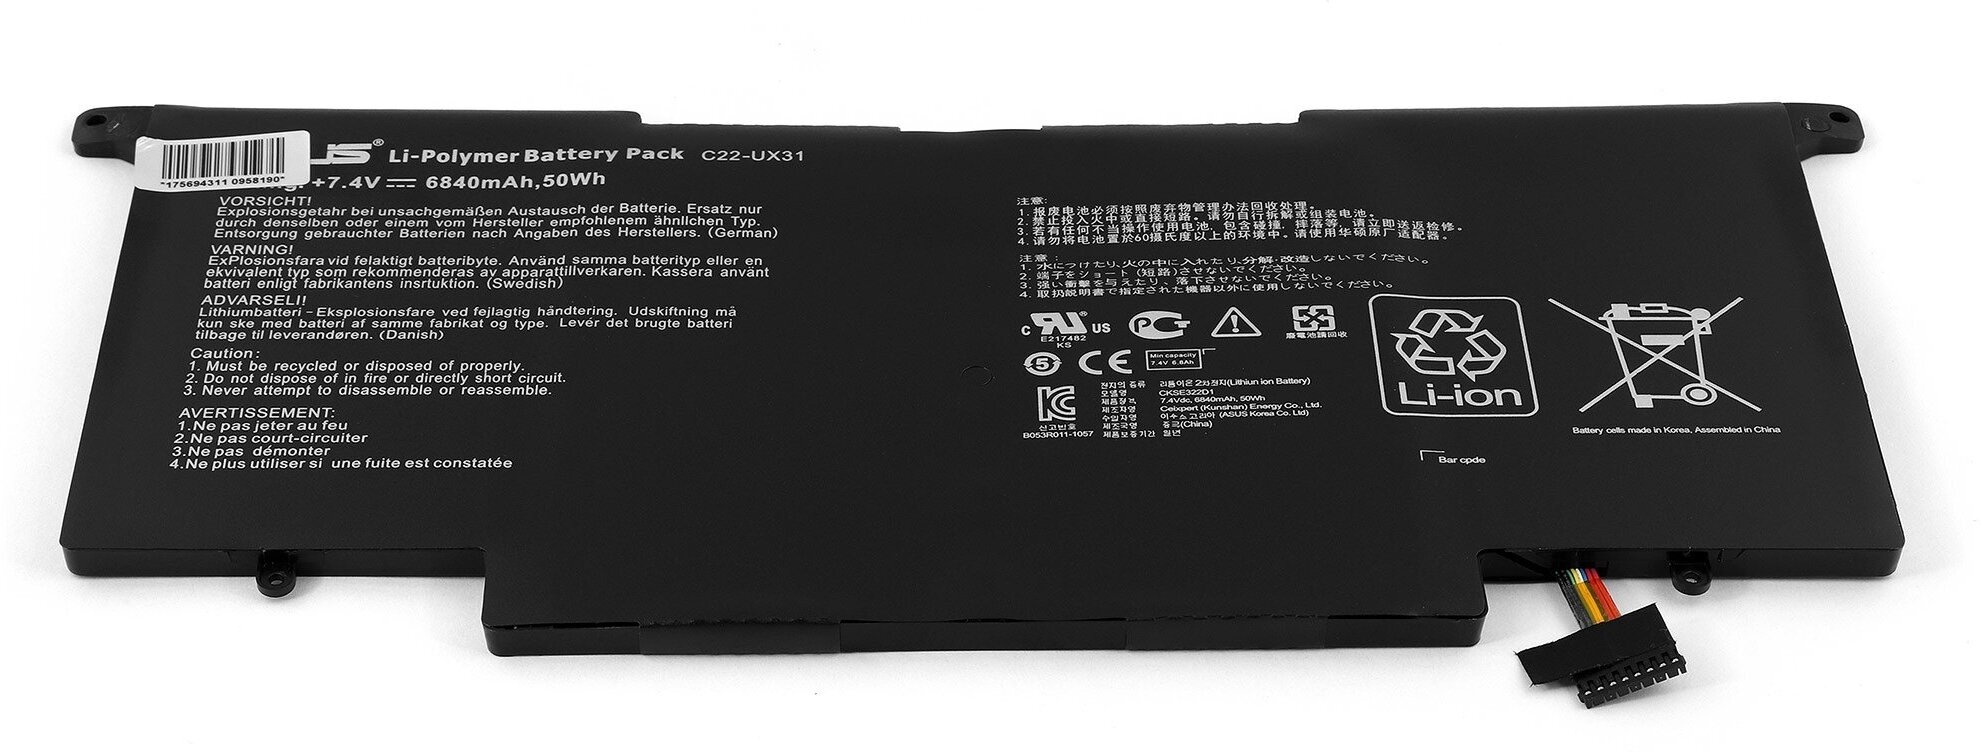 Аккумулятор для ноутбука Asus Zenbook UX31, UX31A, UX31E, UX31LA Series. 7.4V 6840mAh PN: C22-UX31, C23-UX31.